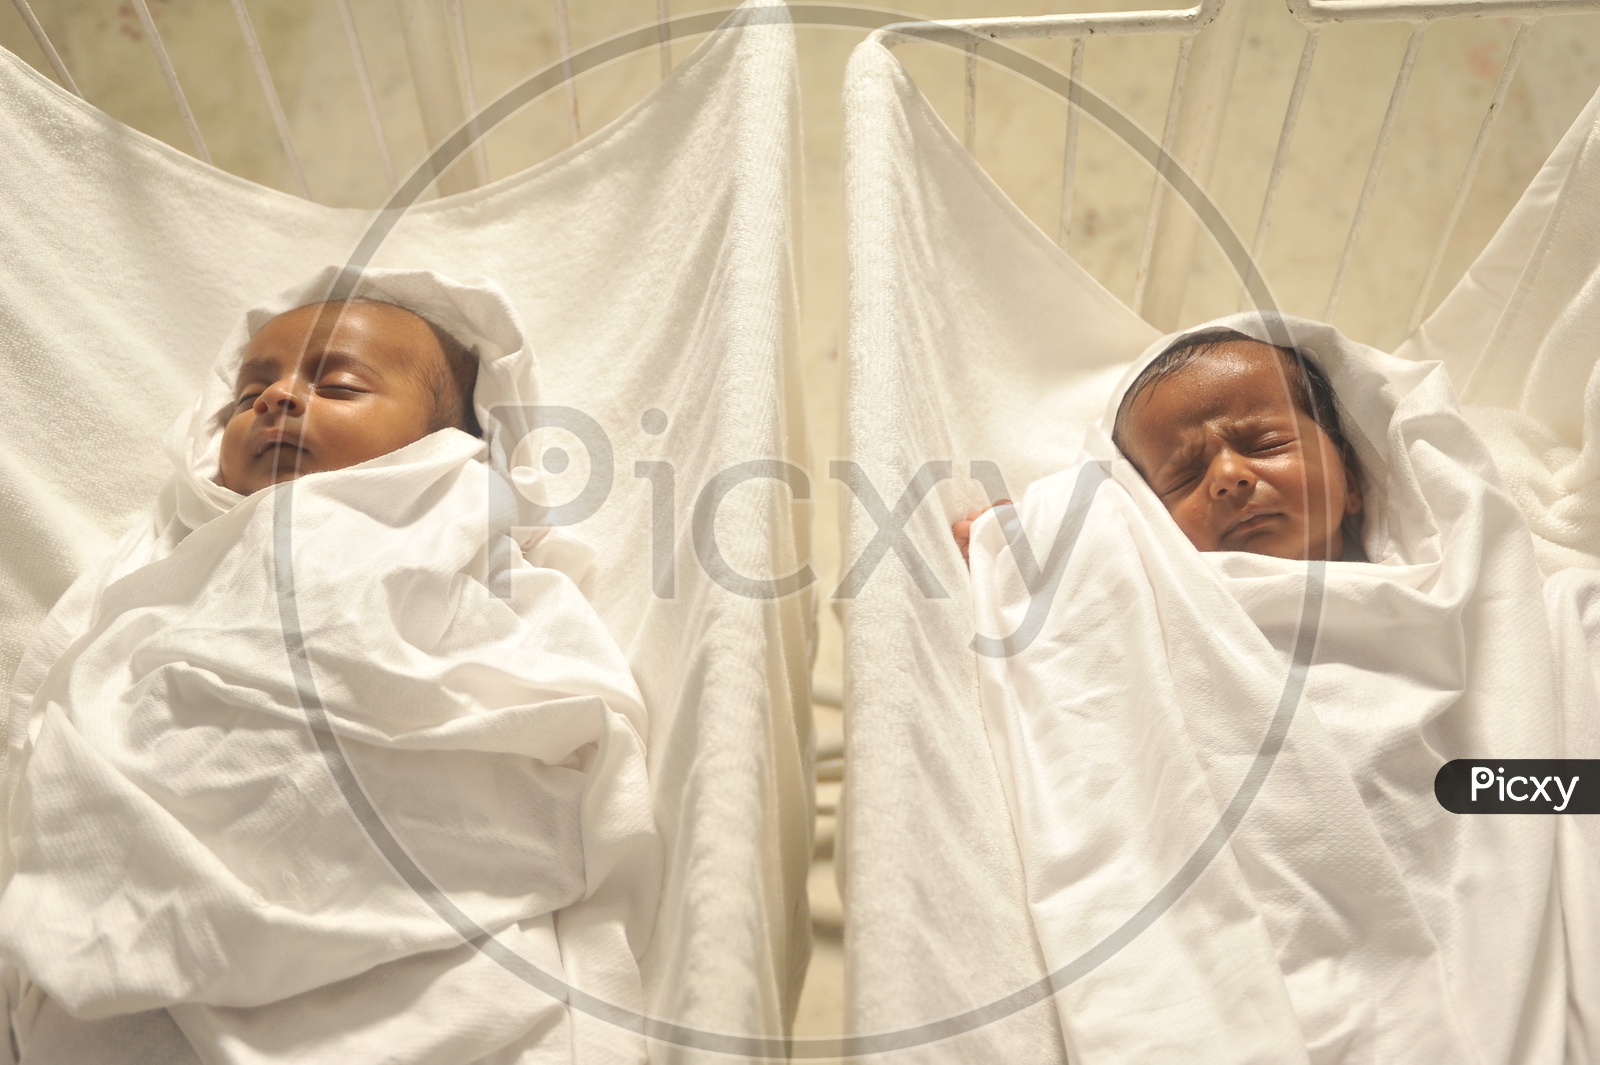 Twins New Born Babies in Hospital Swings